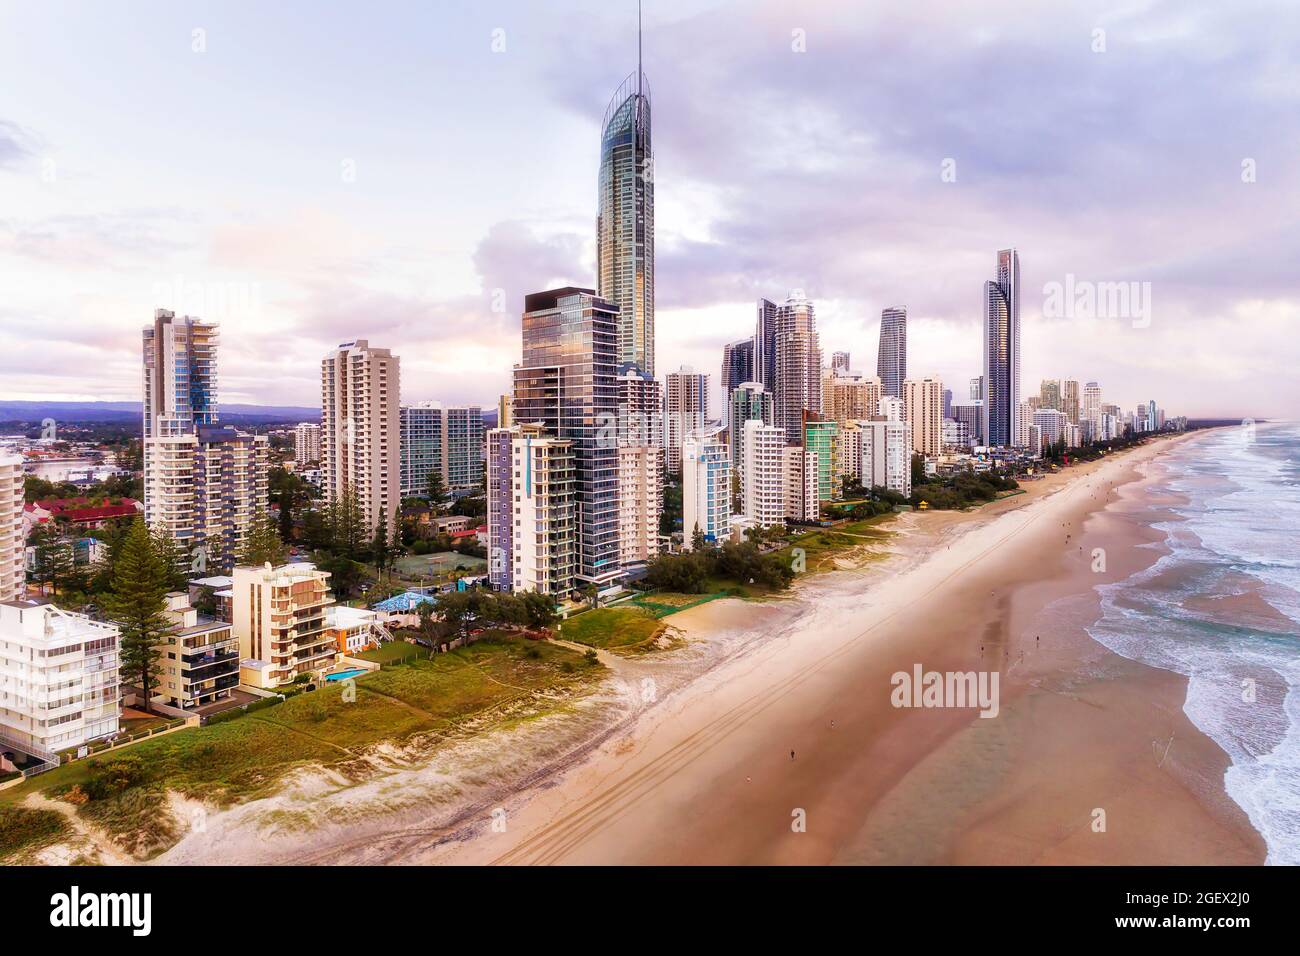 Modernas torres urbanas de gran altura frente al mar en la costa del Pacífico Surfers Paradise - Costa de Oro Australiana. Foto de stock